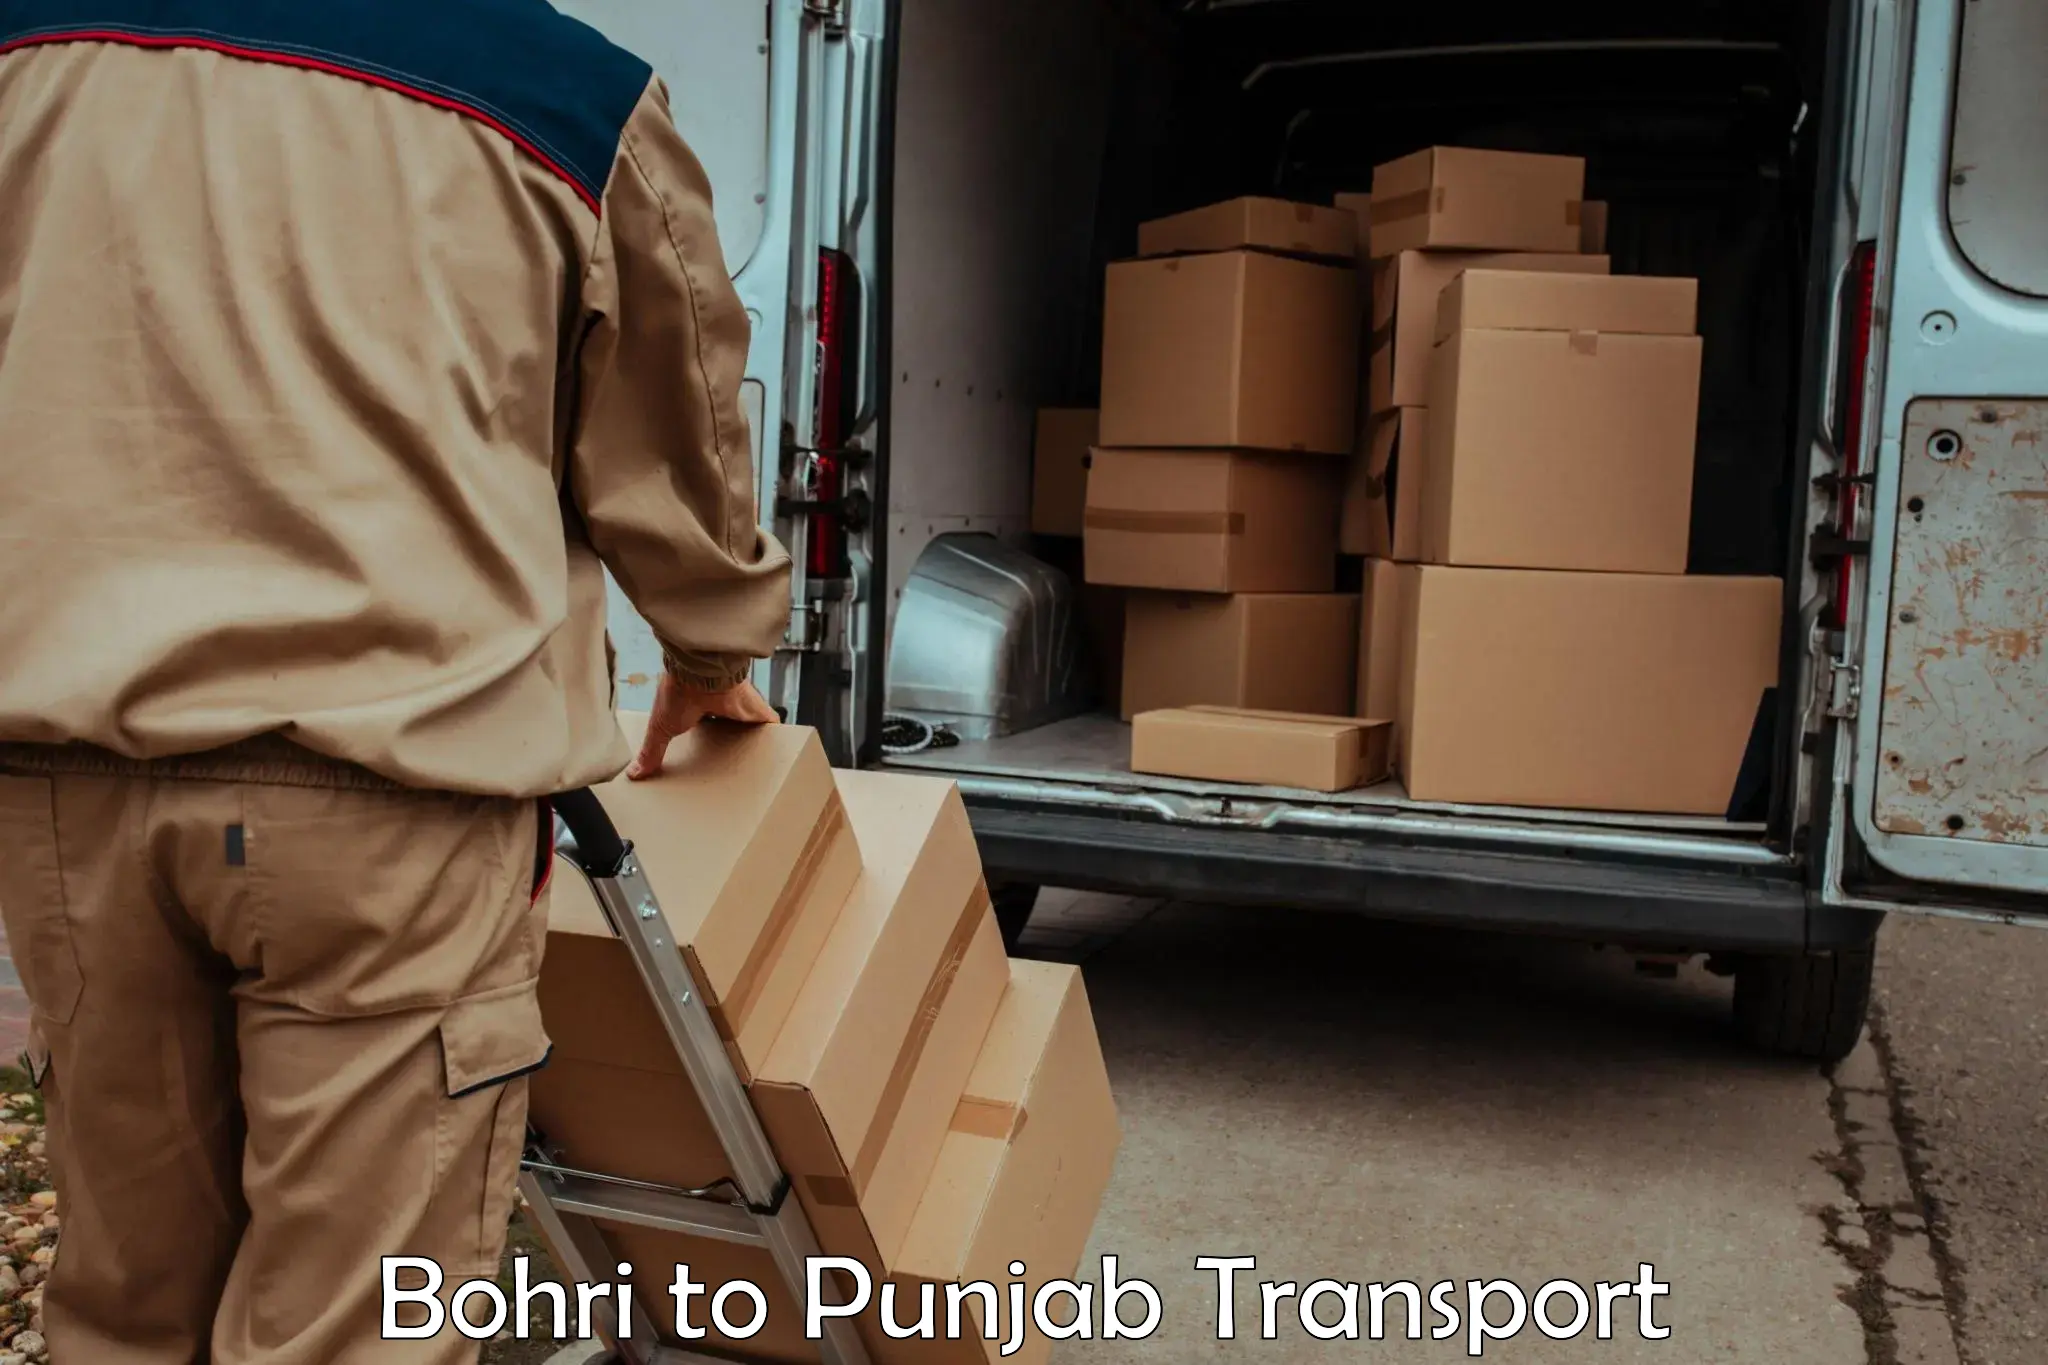 Furniture transport service Bohri to Ludhiana